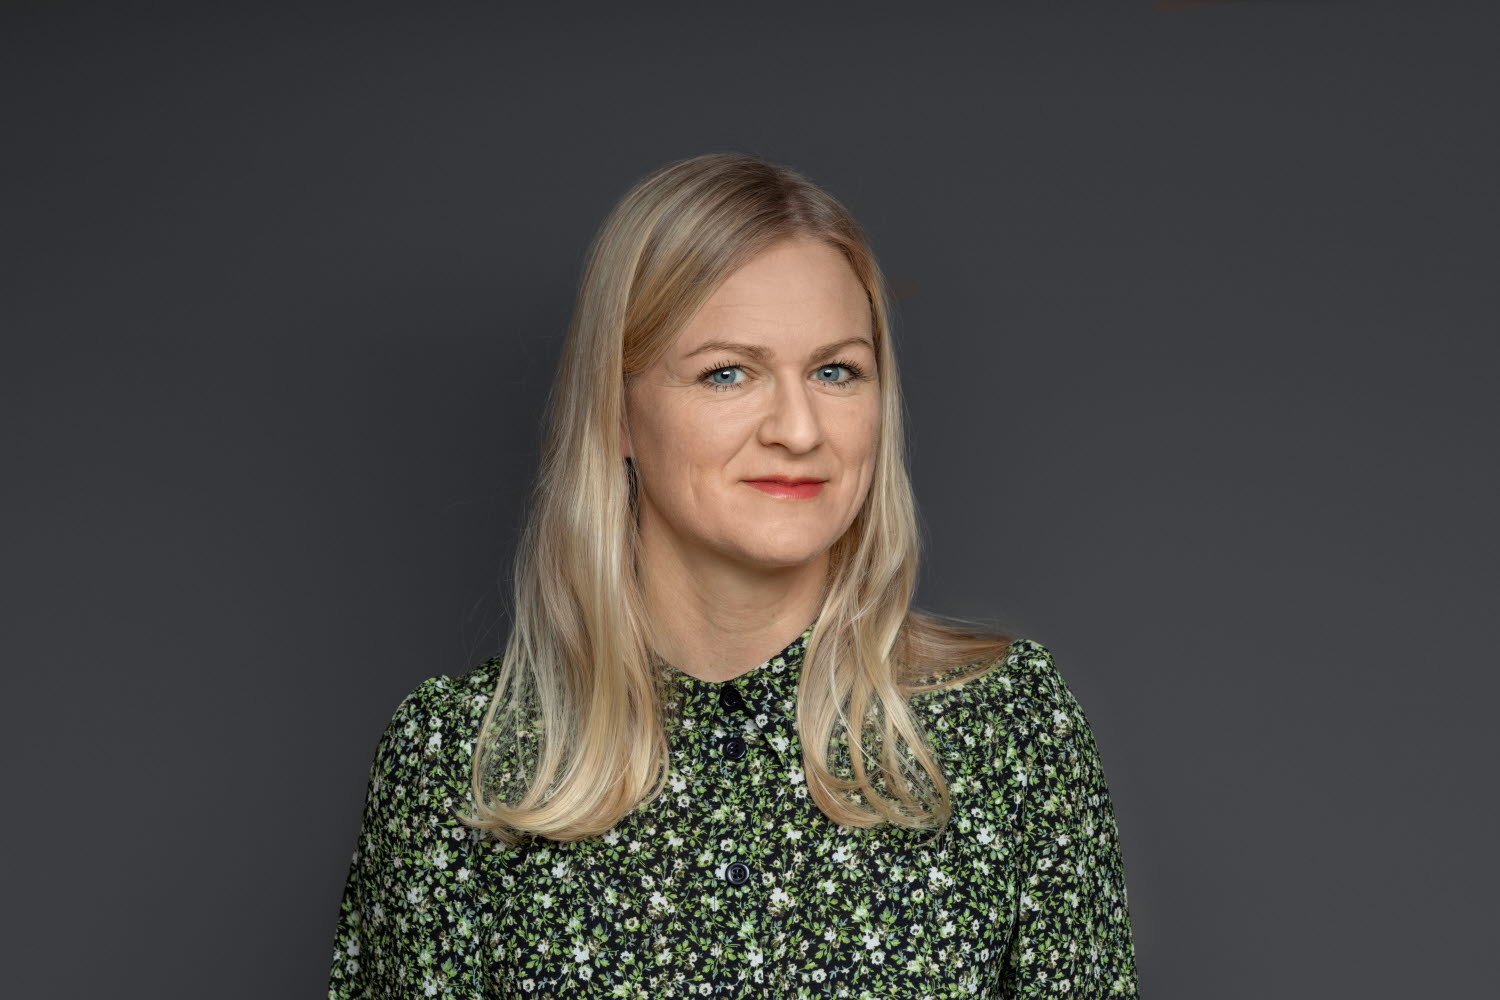  Emelie Norling, hållbarhetsansvarig på Kapitalförvaltning, Afa Försäkring